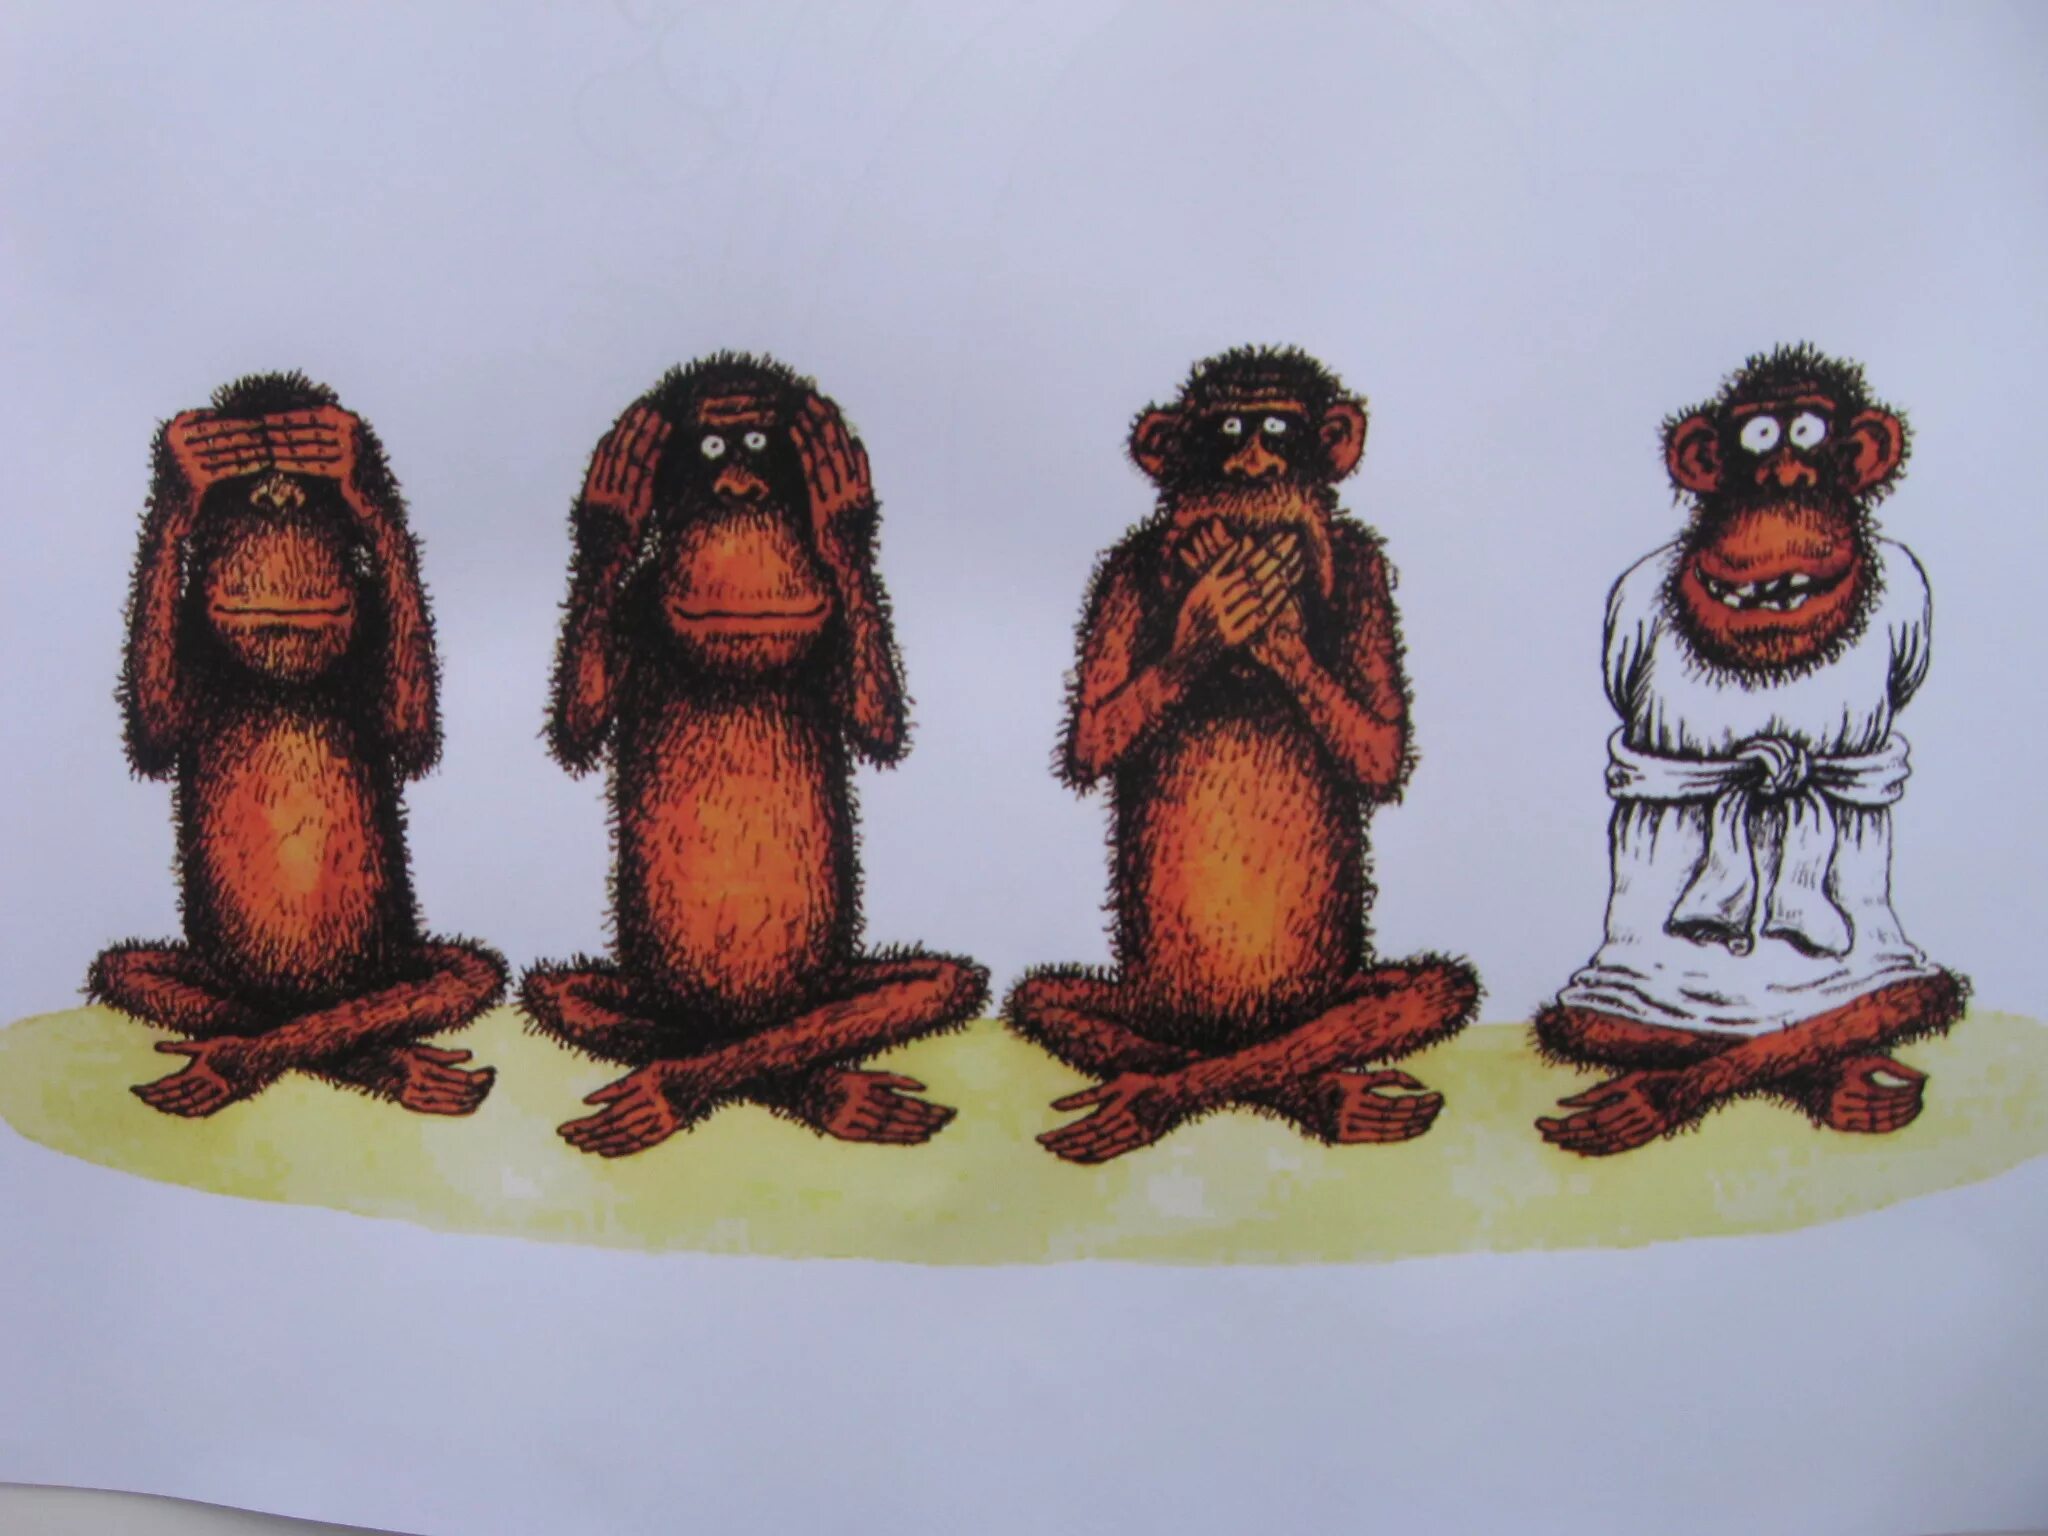 Картина три обезьяны. Ничего не вижу ничего не слышу. Обезьяны ничего не вижу. Изображение трех обезьян.